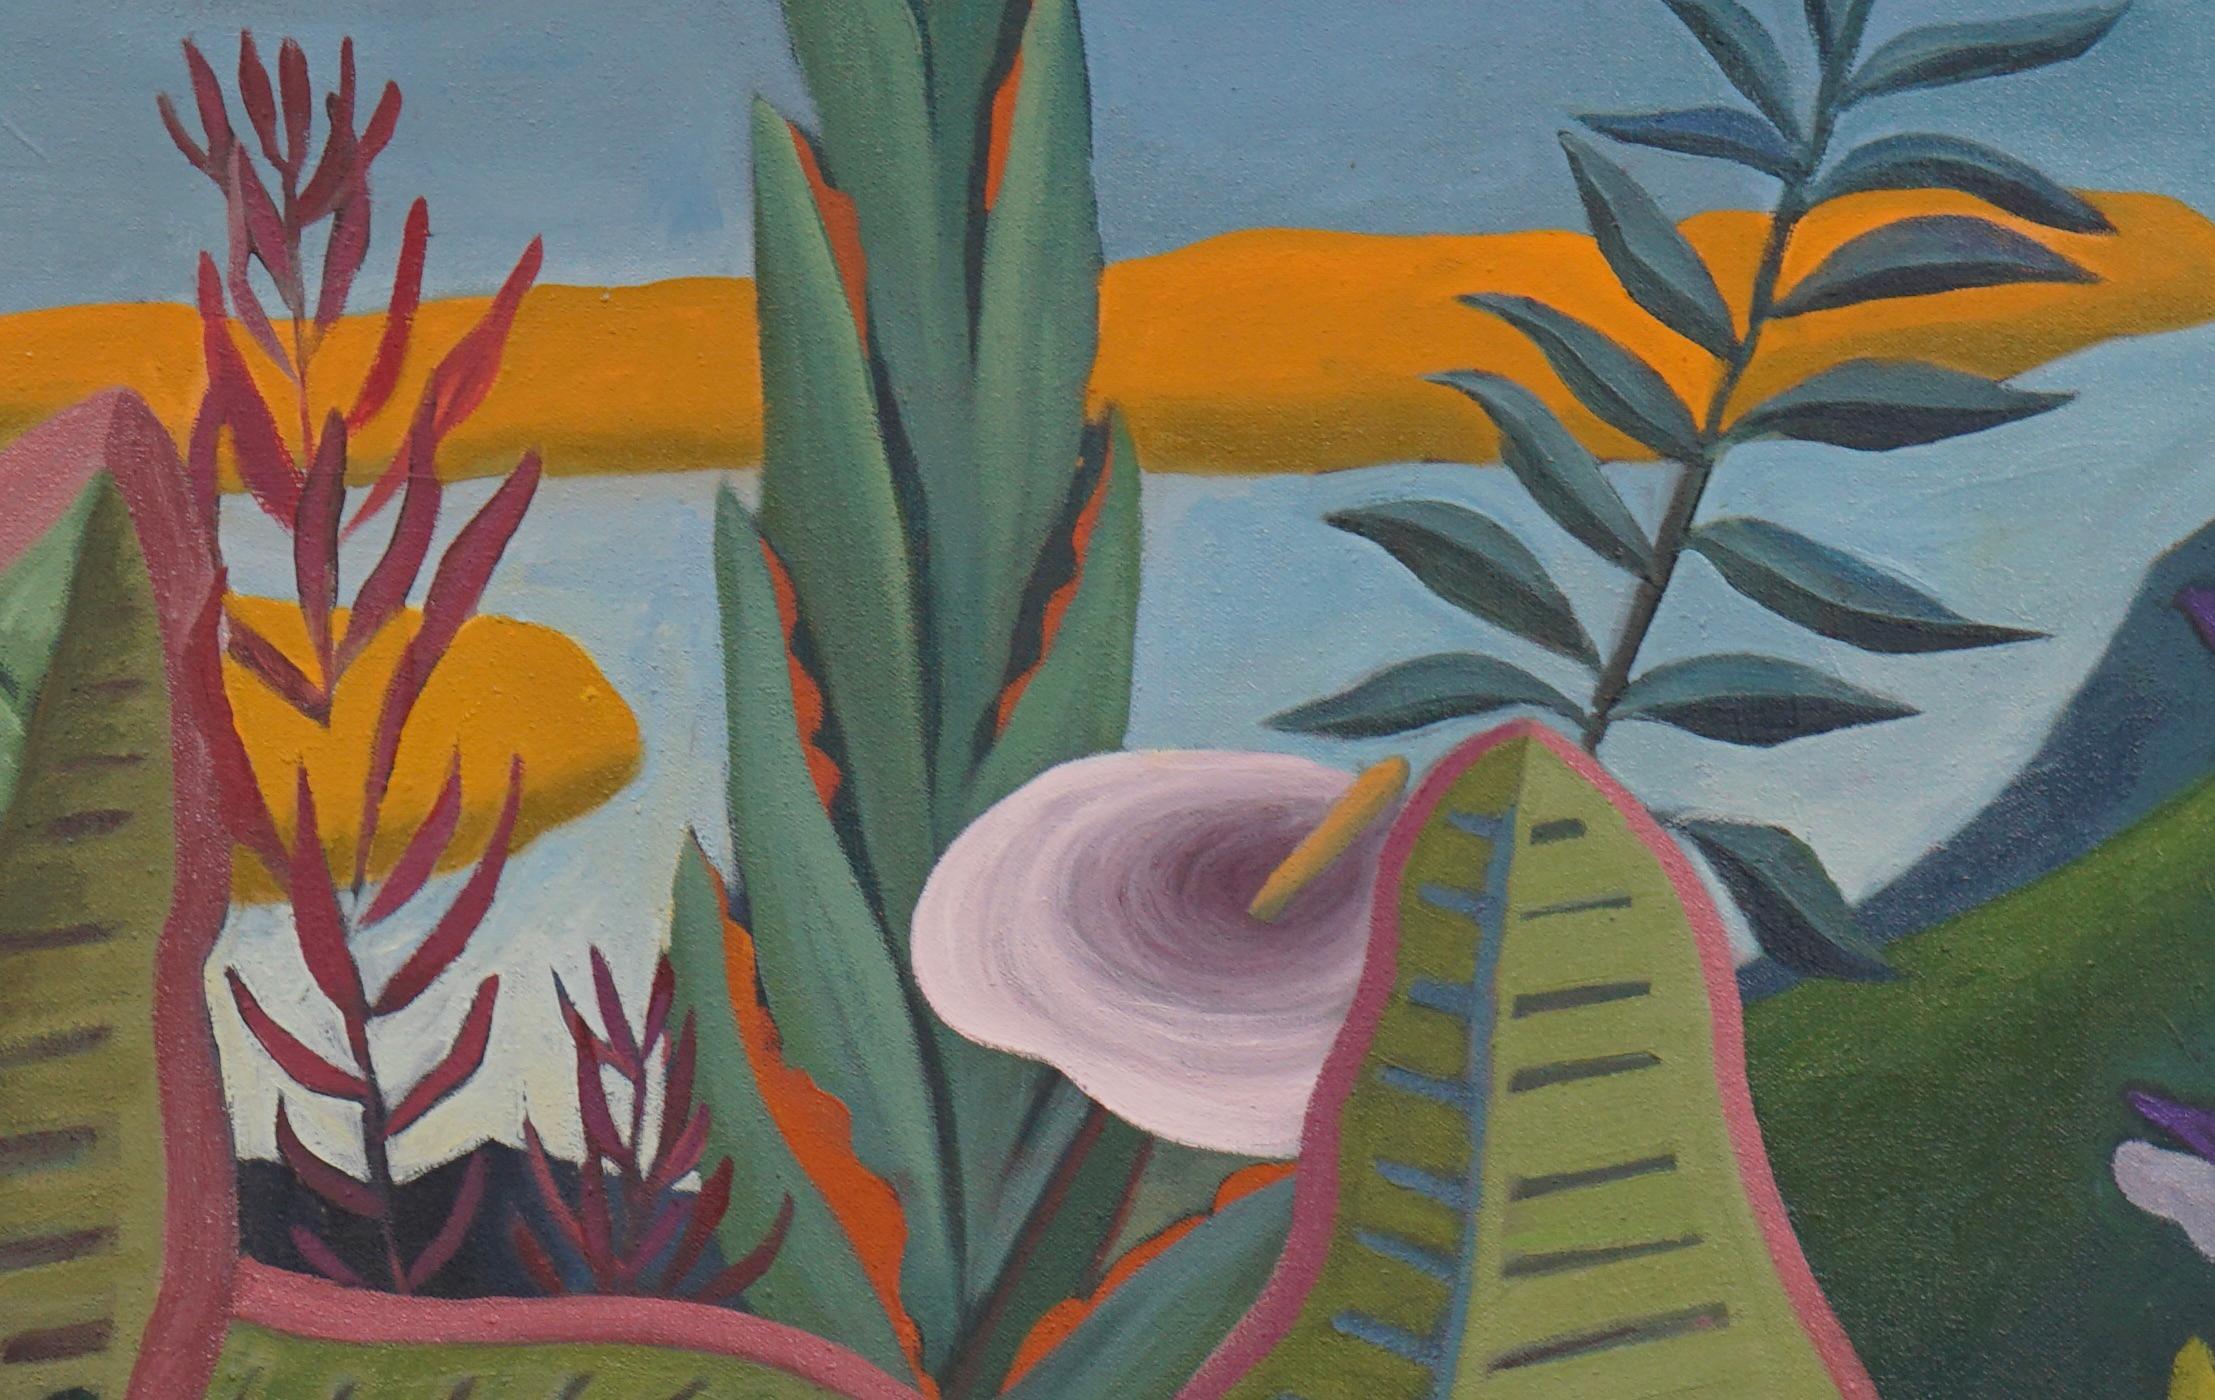 Hommage à Rousseau - Peinture de nu - Art contemporain par Marc Zimmerman - Contemporain Painting par Unknown